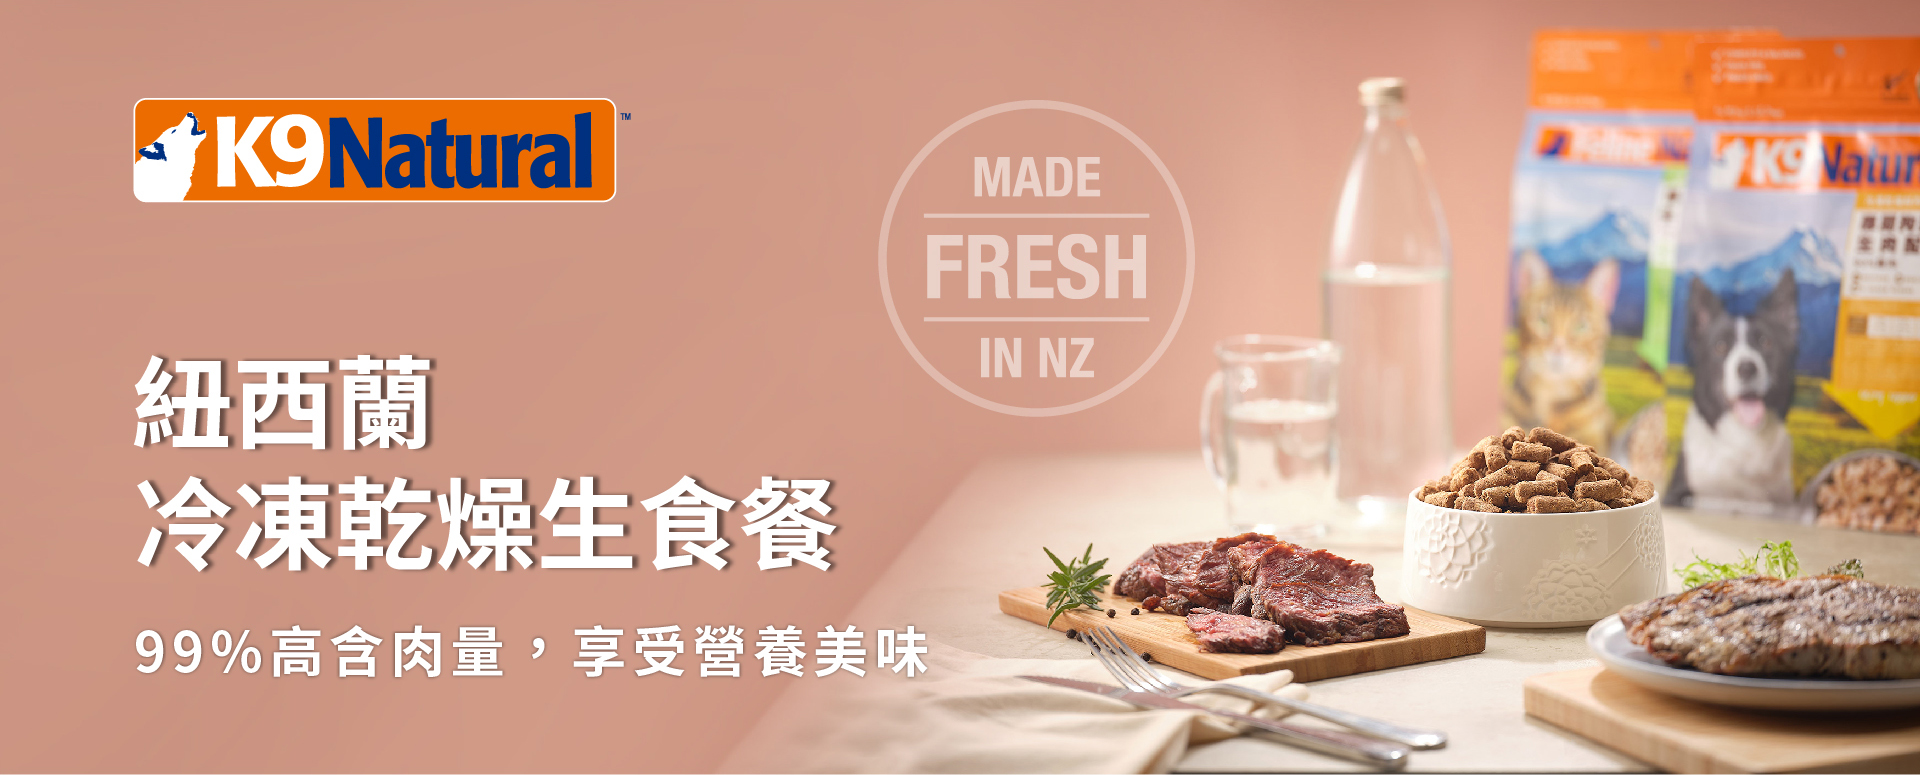 K9紐西蘭冷凍乾燥生食餐